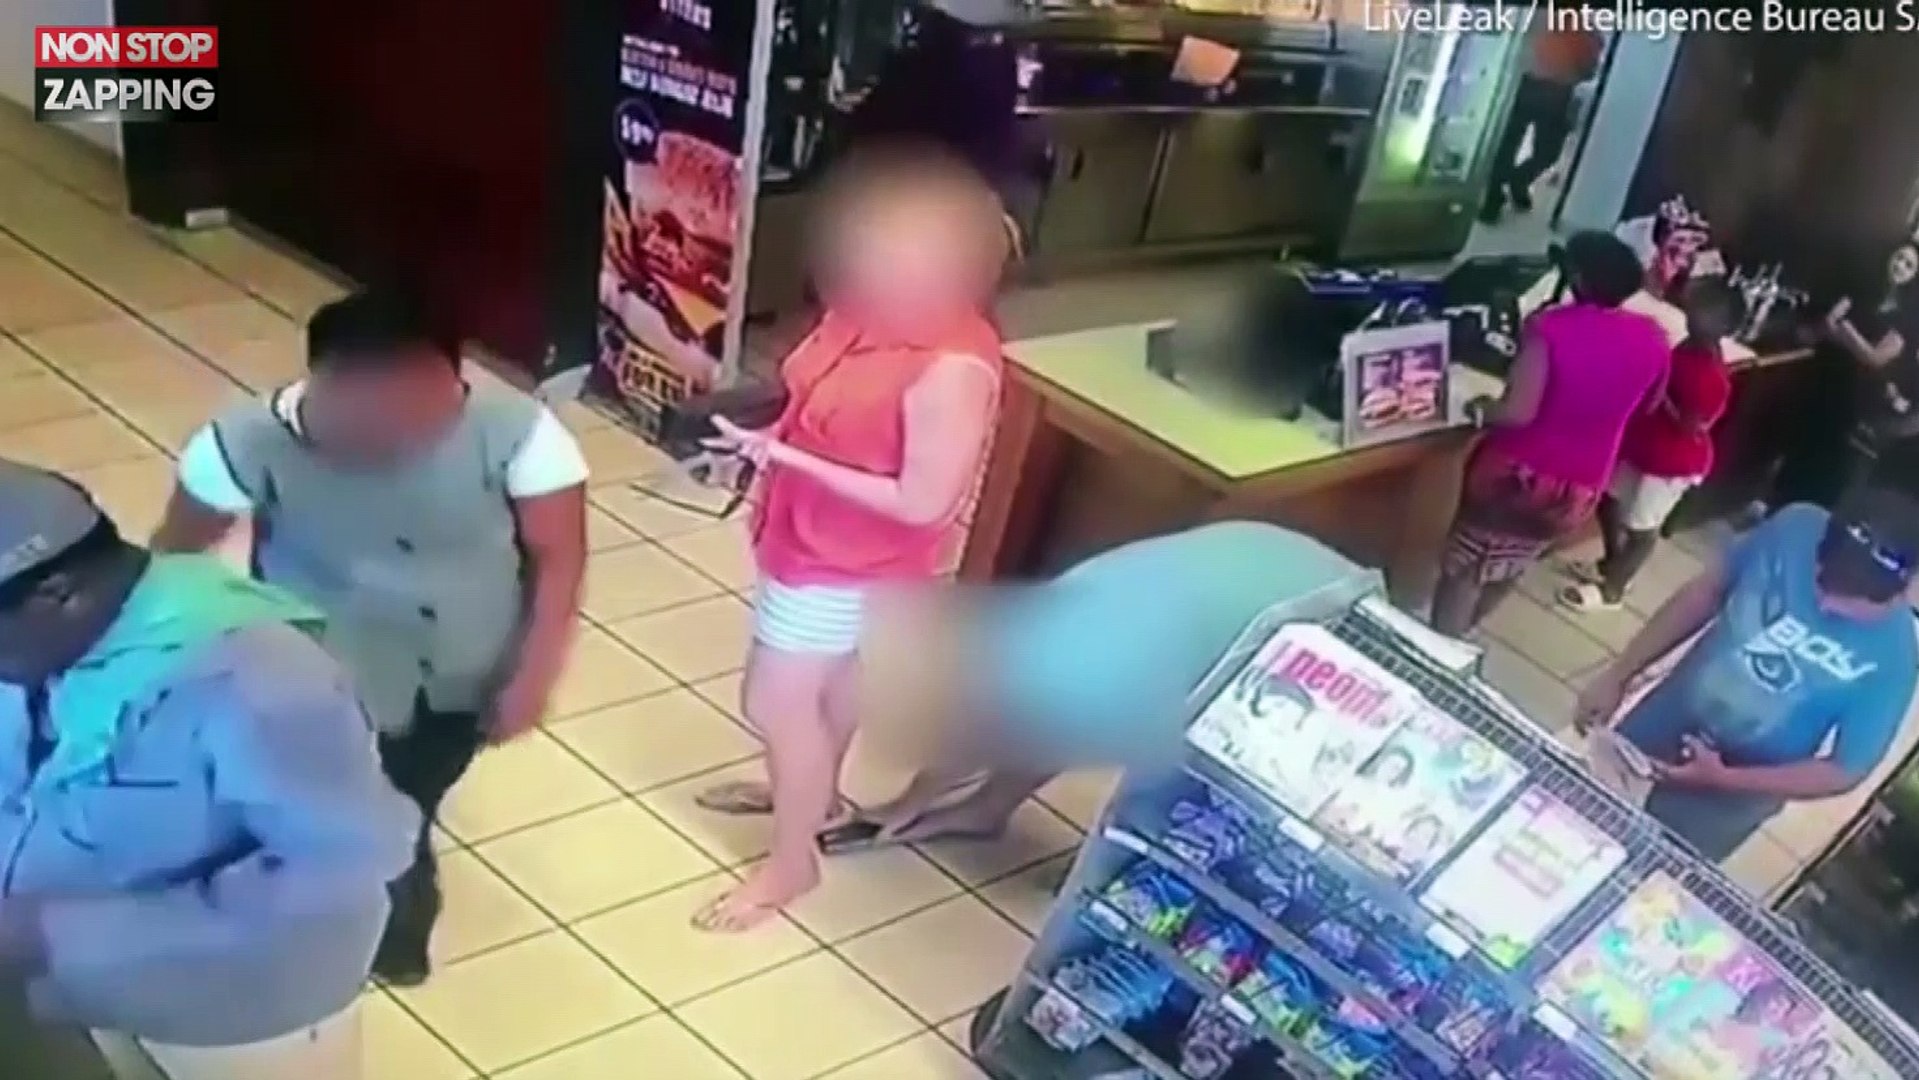 Un homme tente de filmer sous la jupe d'une femme dans un magasin (vidéo) -  Vidéo Dailymotion